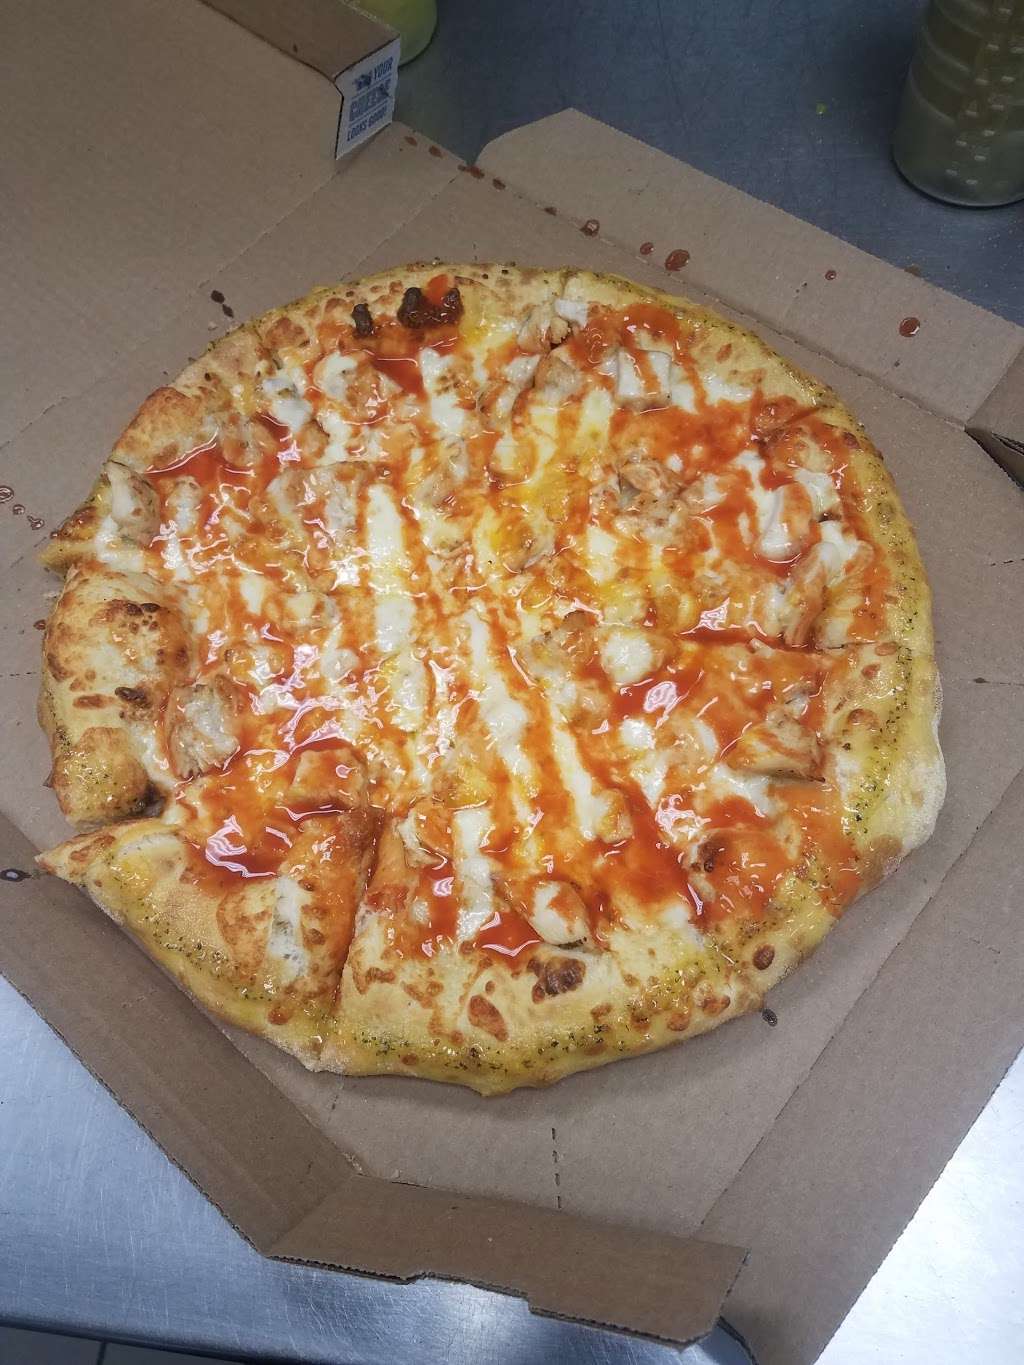 Dominos Pizza | 1145 N 5th St, Perkasie, PA 18944 | Phone: (215) 453-8440